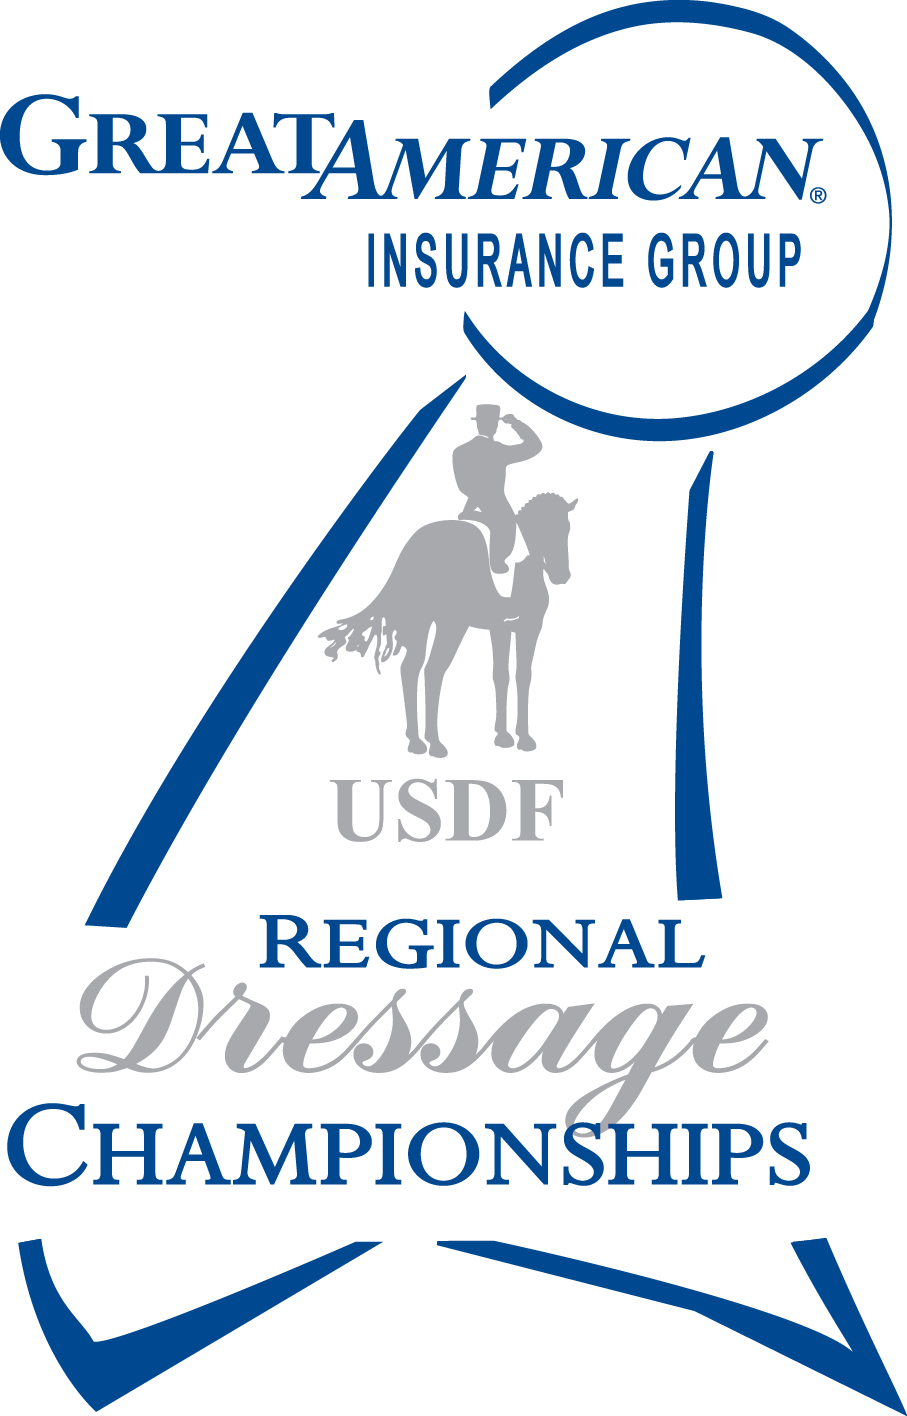 KDA regional championships logo